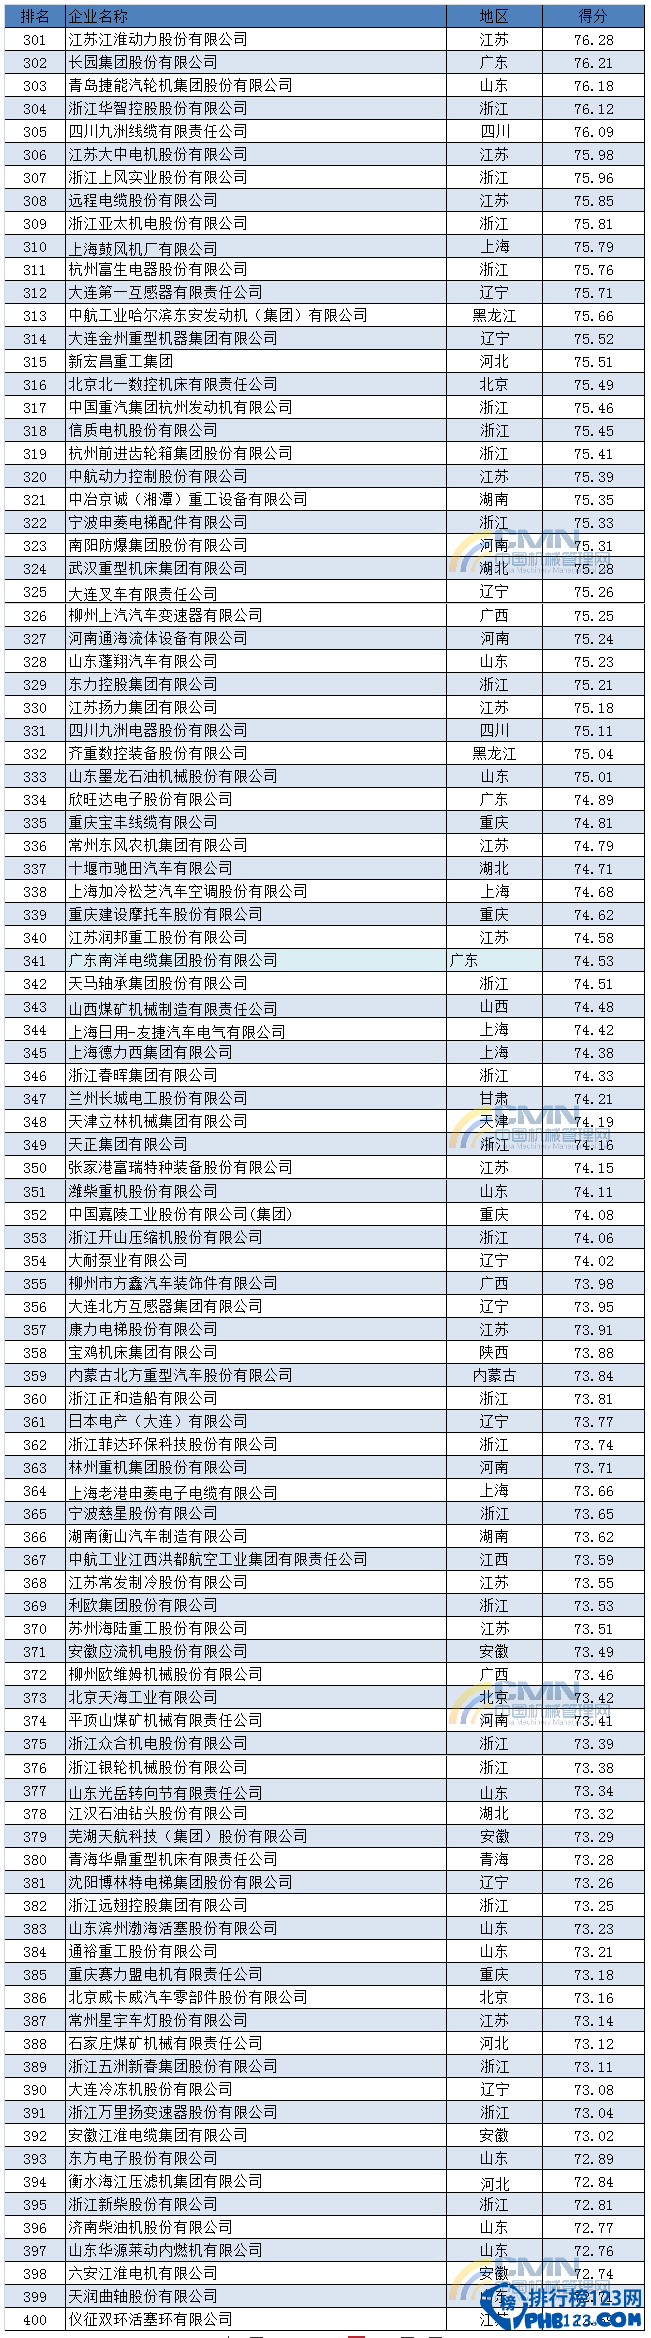 2014中國機械500強排行榜